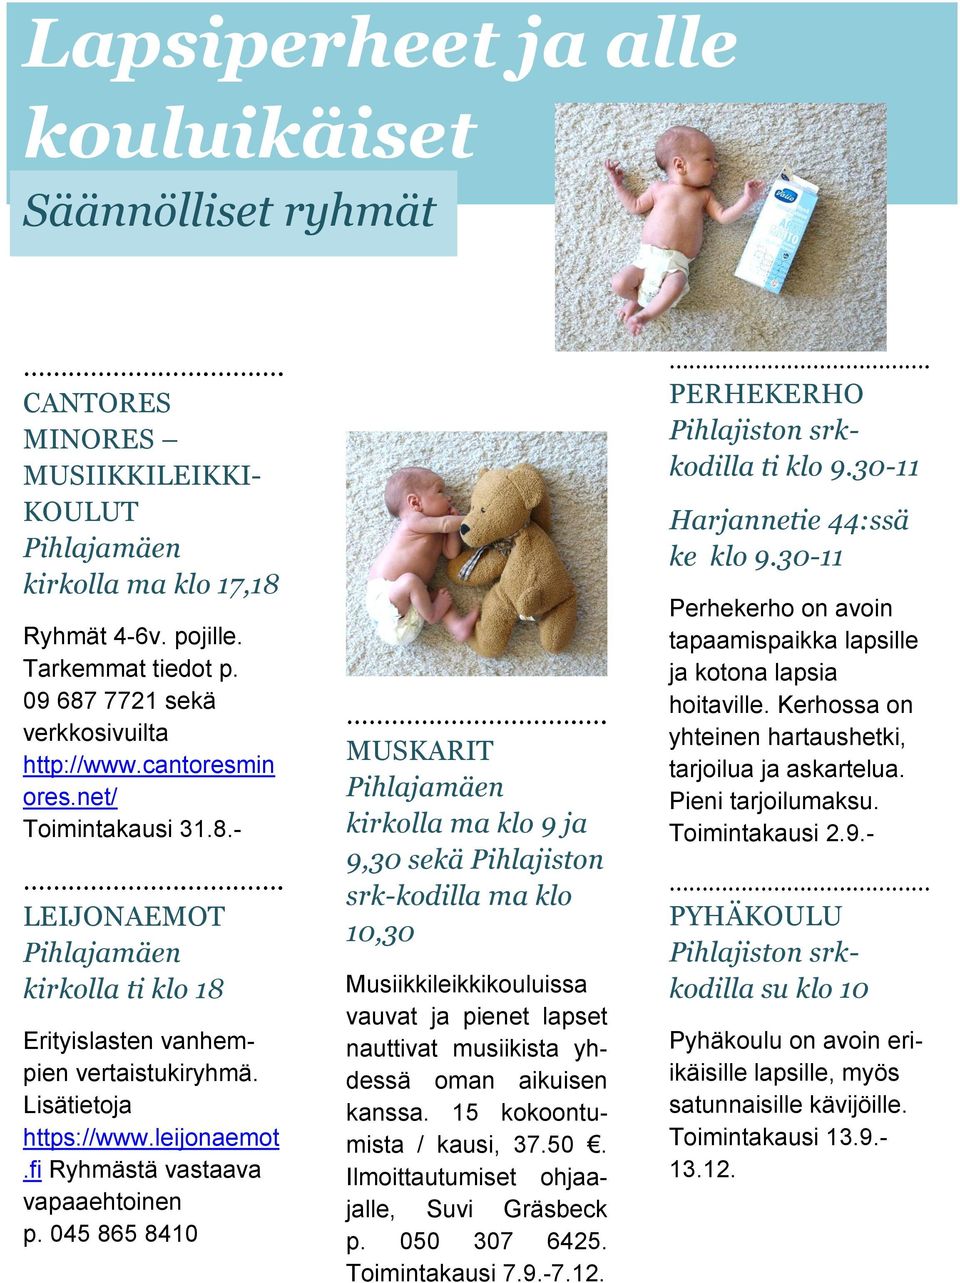 leijonaemot.fi Ryhmästä vastaava vapaaehtoinen p. 045 865 8410.